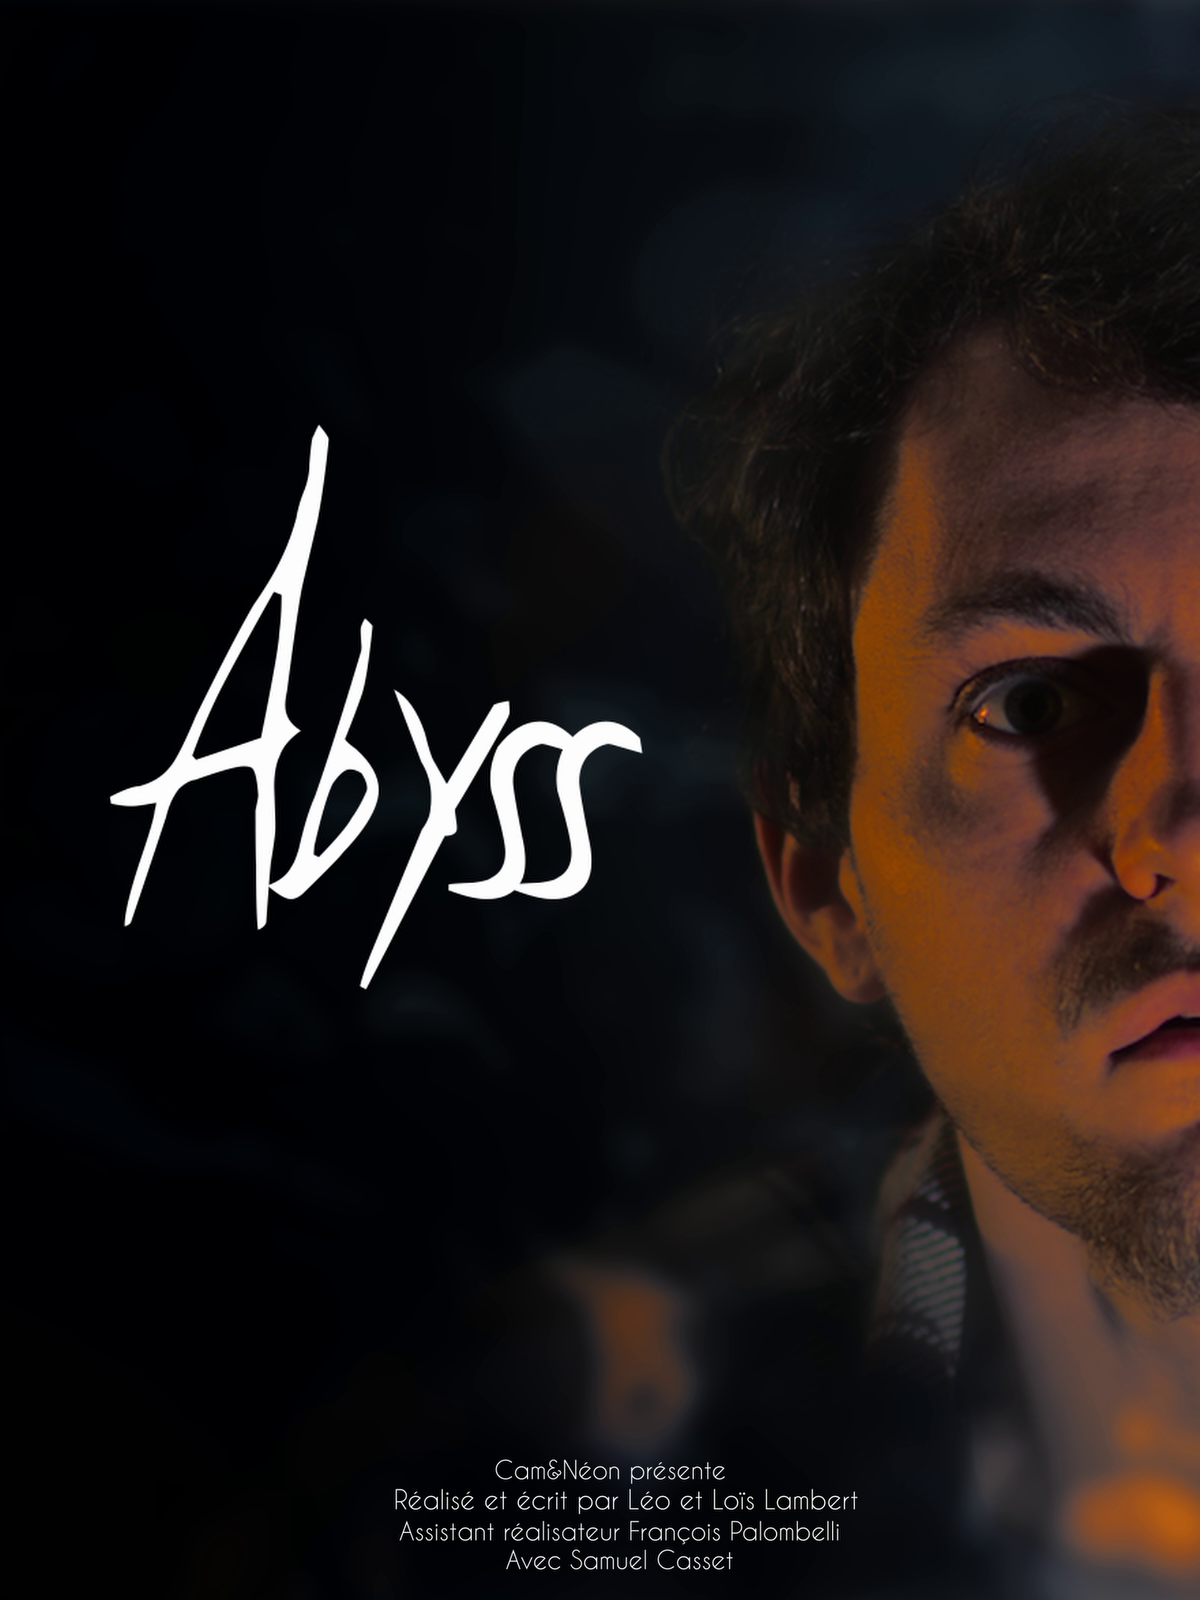 Affiche de "Abyss", court métrage de Cam&Néon studio